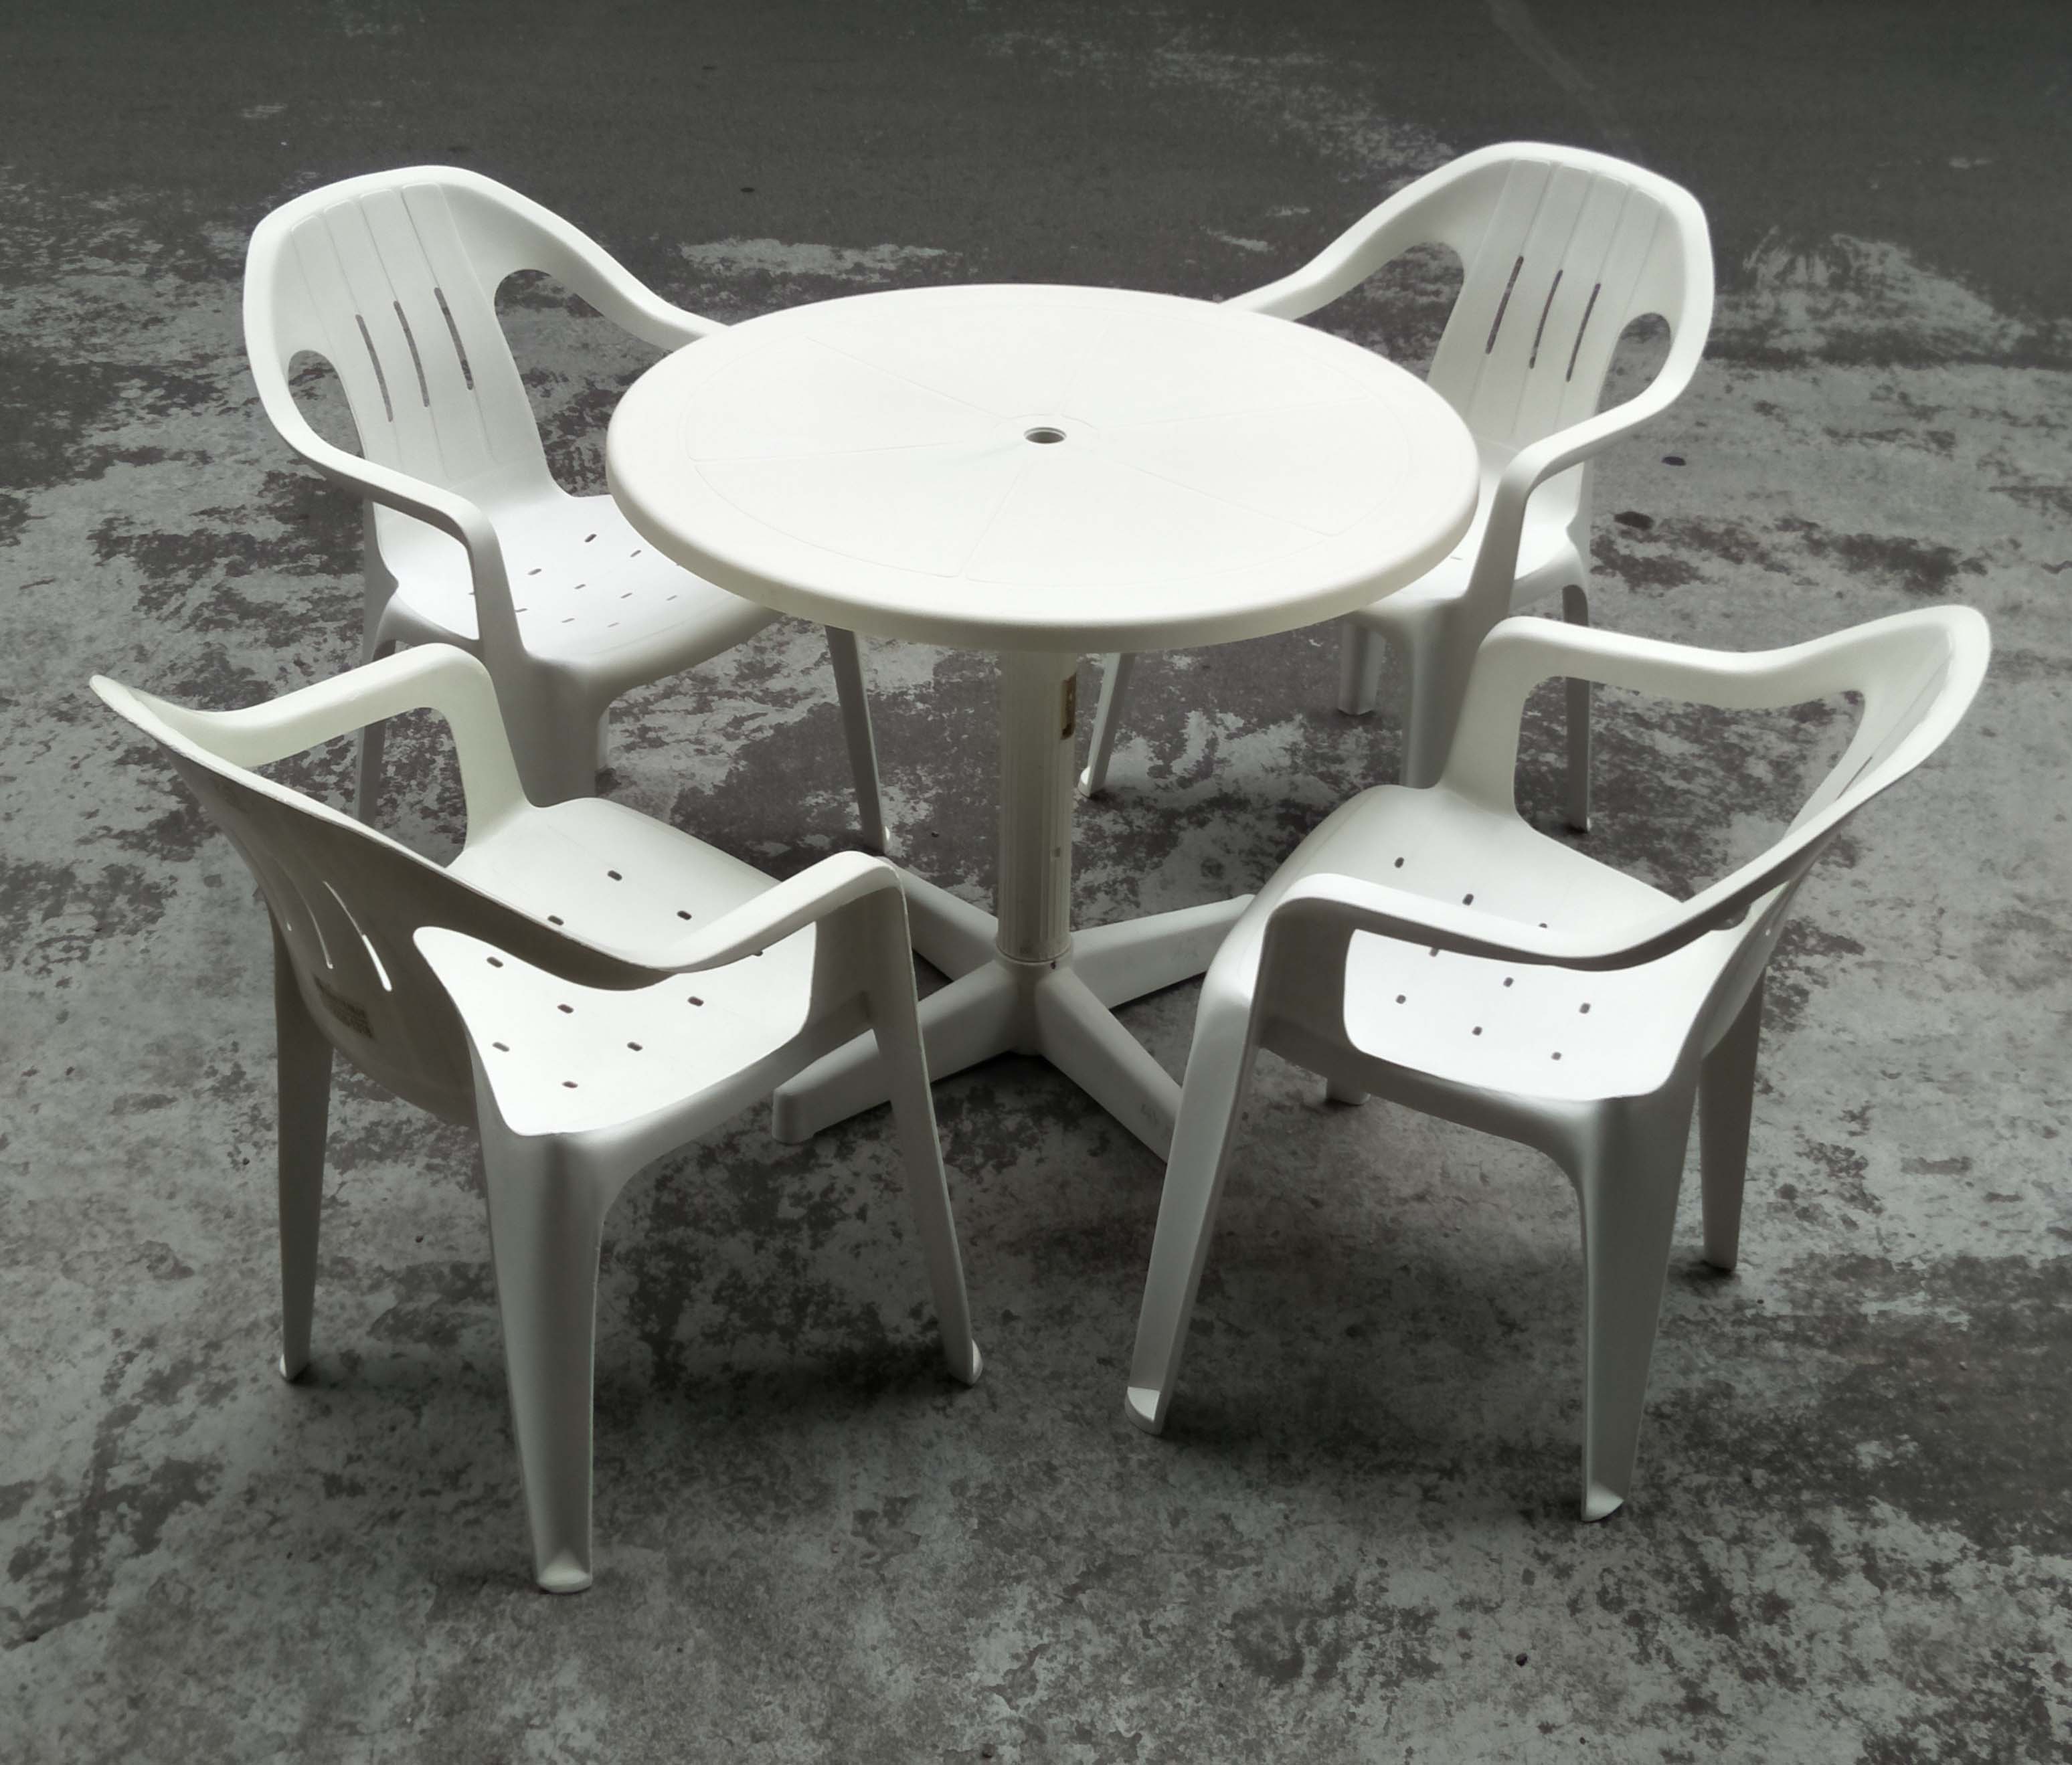 二手休閒桌椅組(1桌4椅)$1,600元/組，休閒桌椅、咖啡桌椅、戶外桌椅、庭院桌椅。